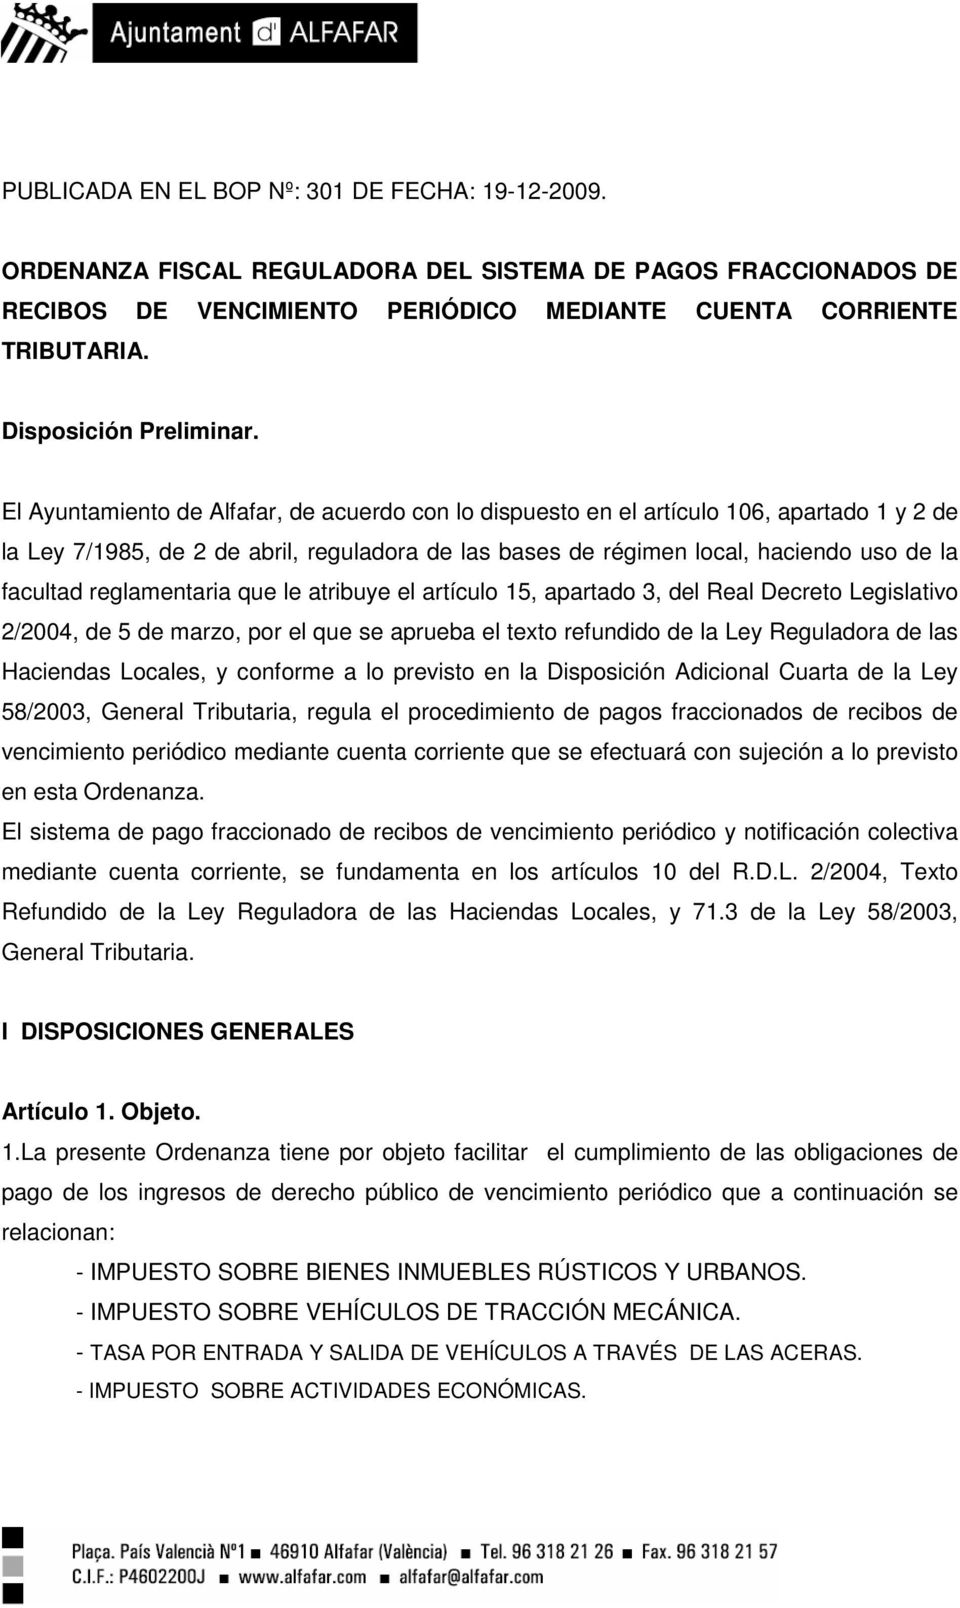 El Ayuntamiento de Alfafar, de acuerdo con lo dispuesto en el artículo 106, apartado 1 y 2 de la Ley 7/1985, de 2 de abril, reguladora de las bases de régimen local, haciendo uso de la facultad